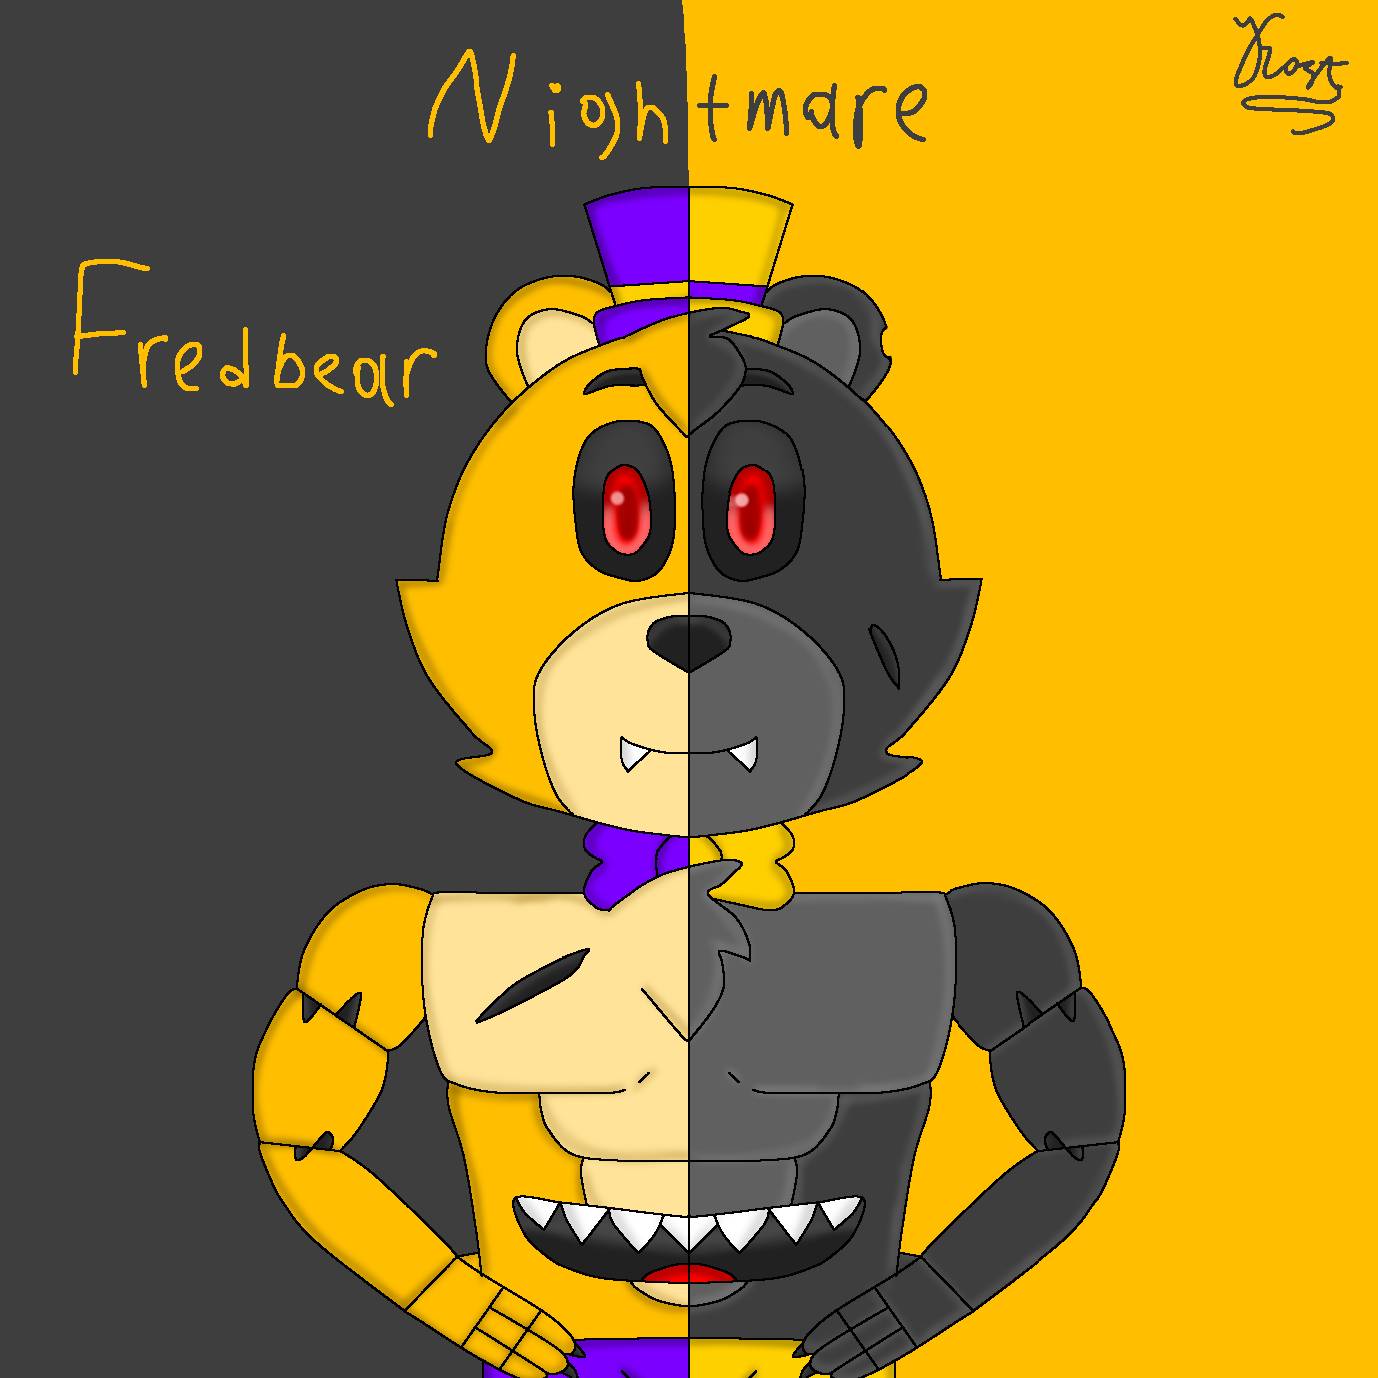 Fnaf UCN Nightmare Fredbear by Spring-o-bonnie on DeviantArt